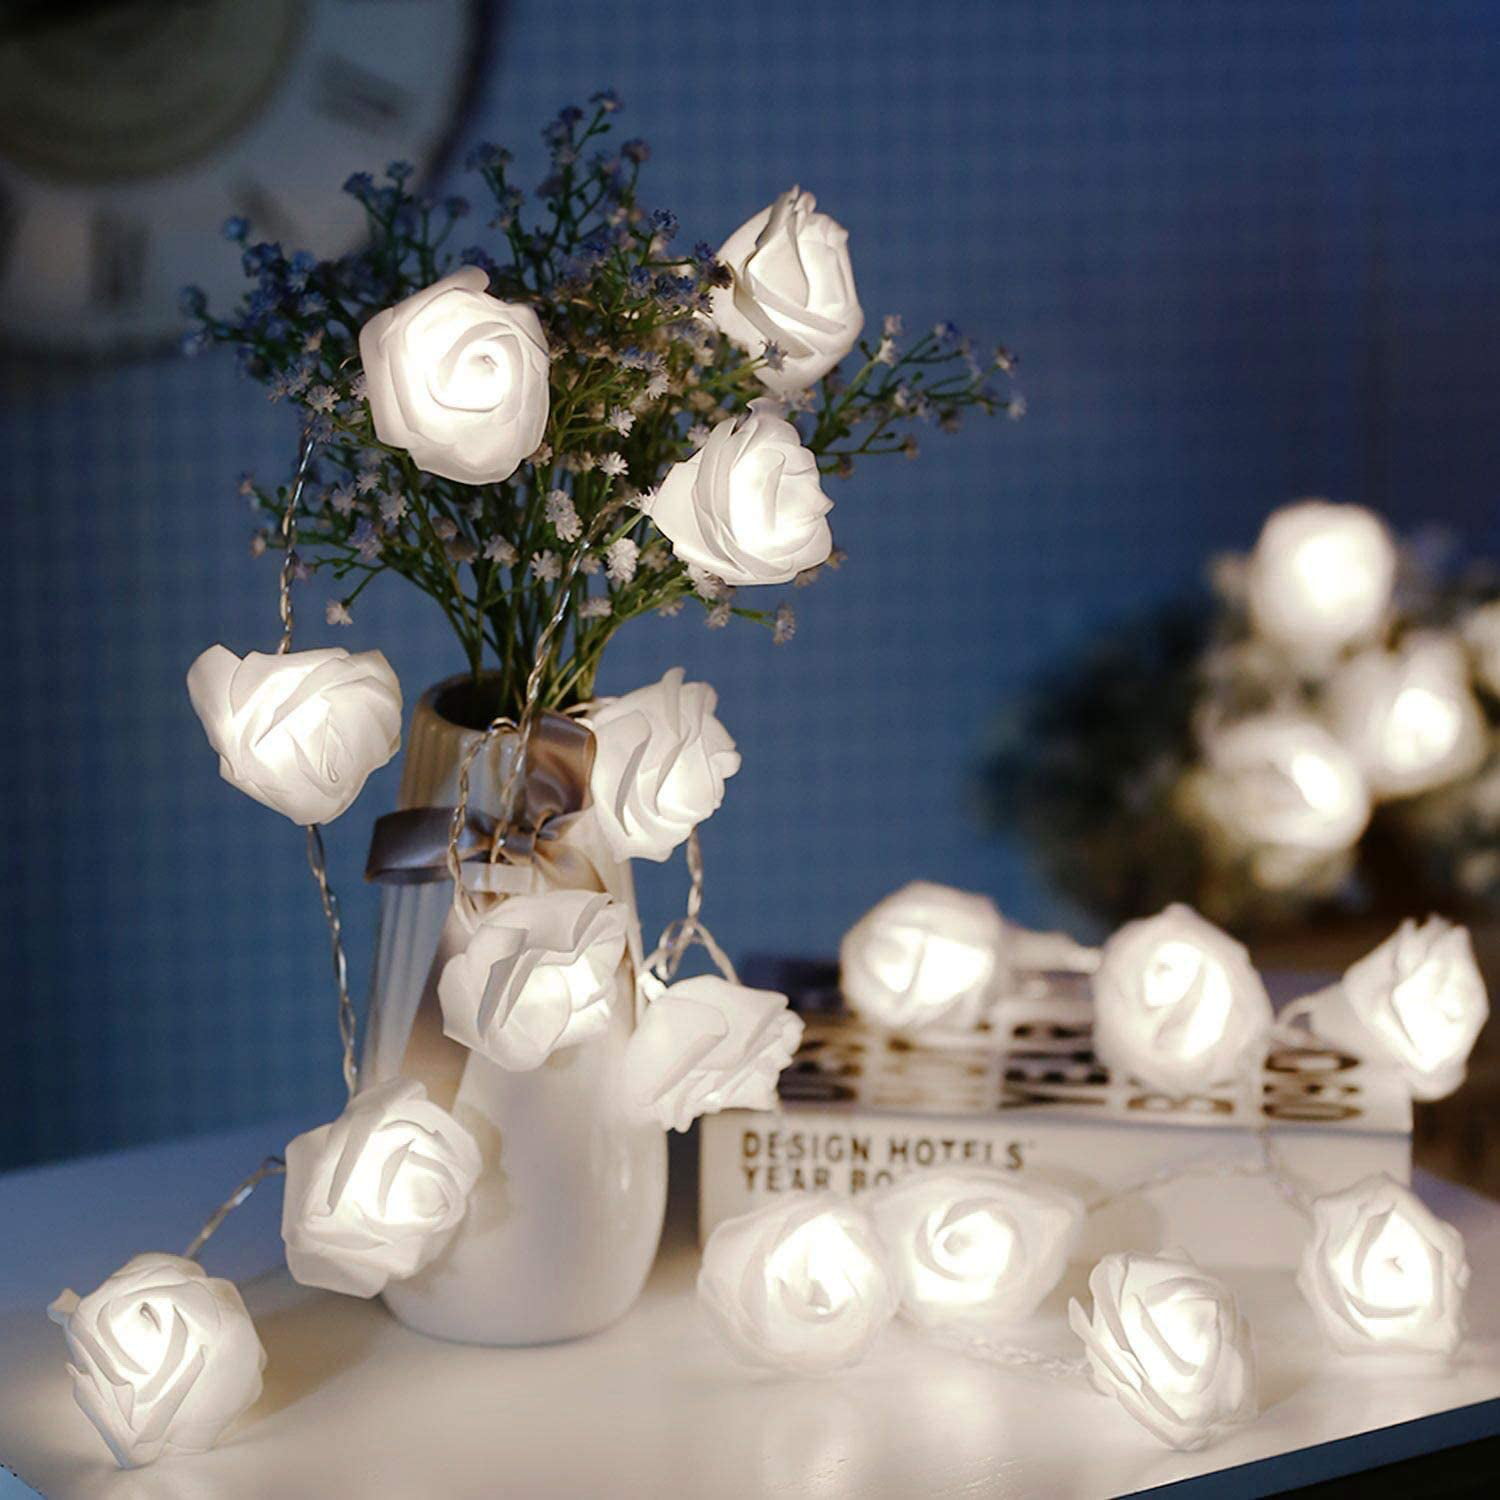 LED Rose Flower Fairy String Light Romantic Wedding Garden Party Christmas Decor 